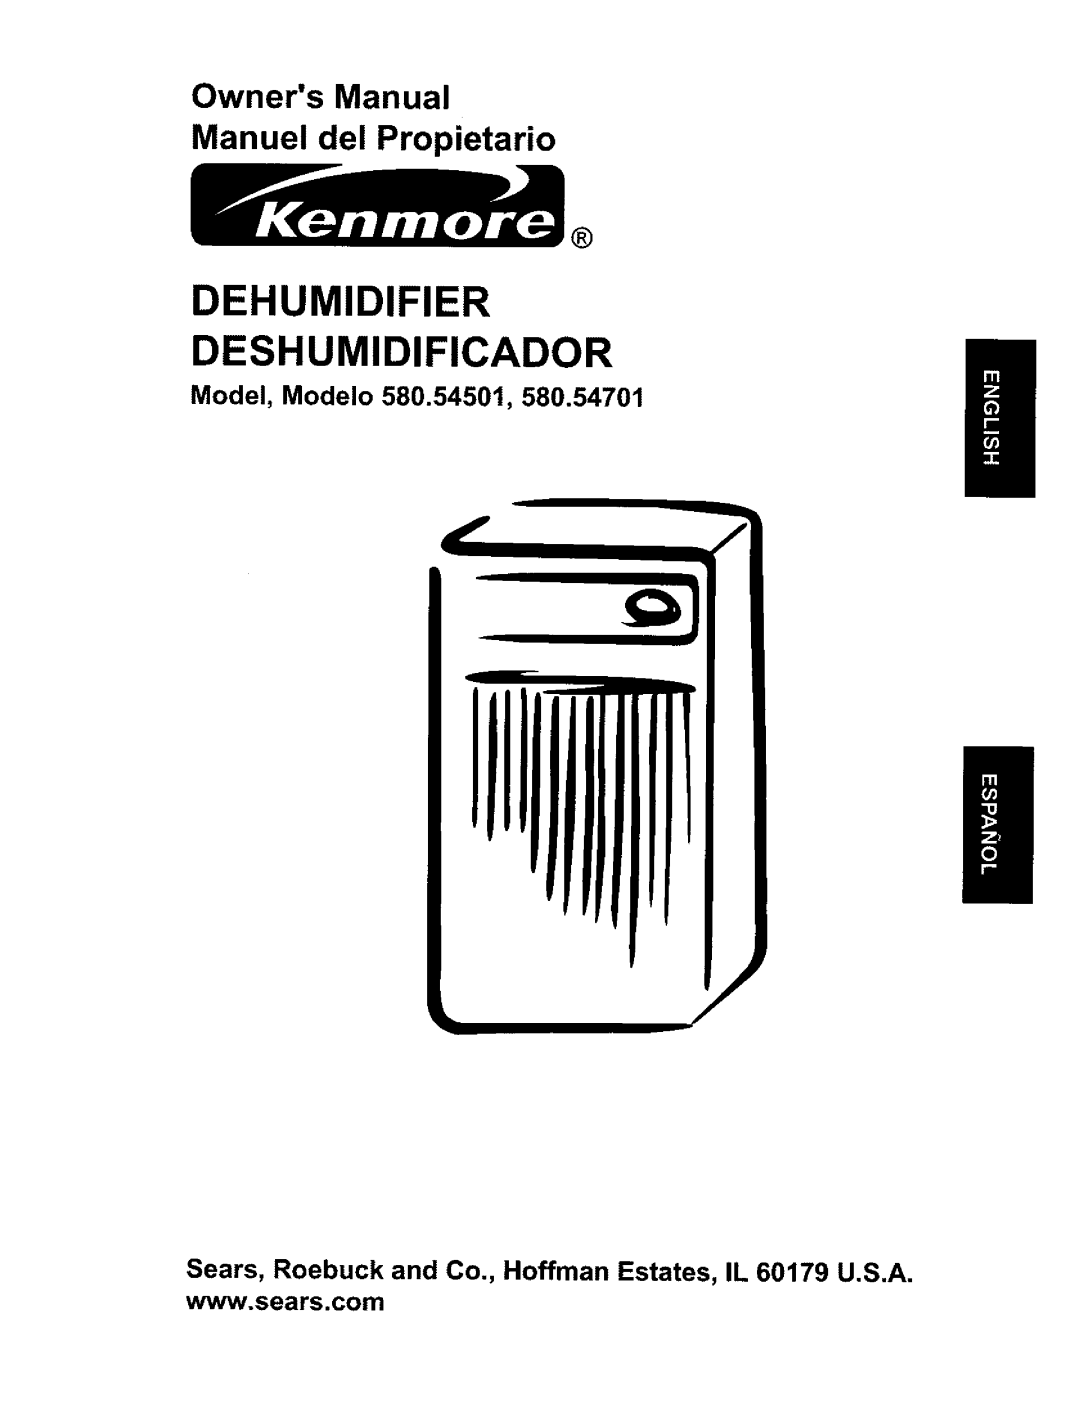 Kenmore 580.54701 owner manual Model, Modelo, Dehumidifier Deshumidificador 